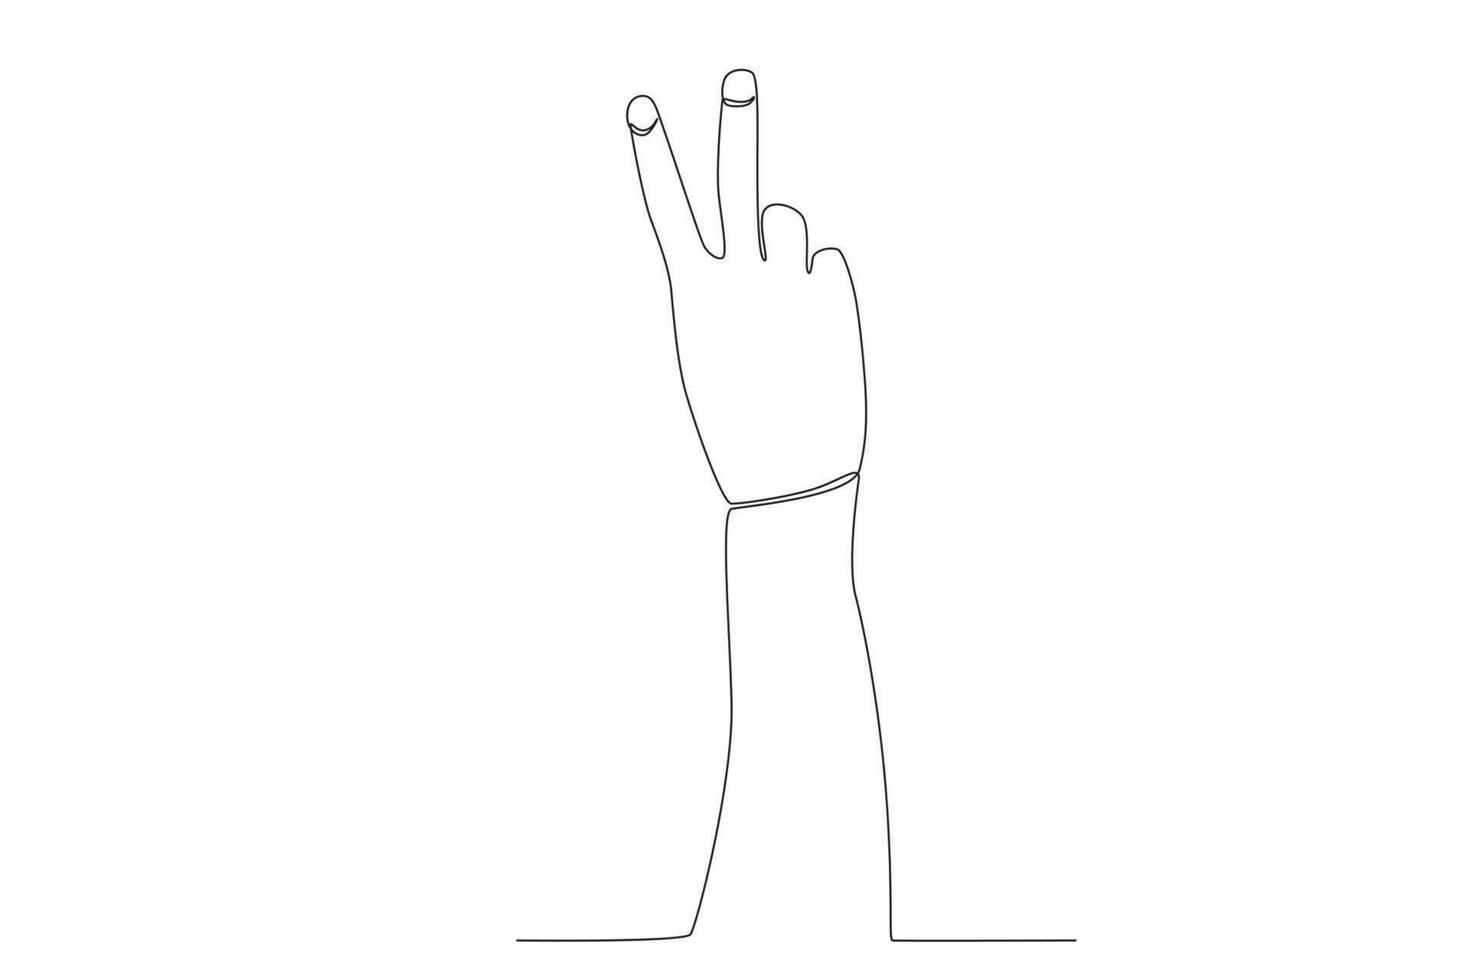 vettore continuo uno linea disegno mano gesto v simbolo per pace pace giorno concetto singolo linea disegnare design vettore grafico illustrazione